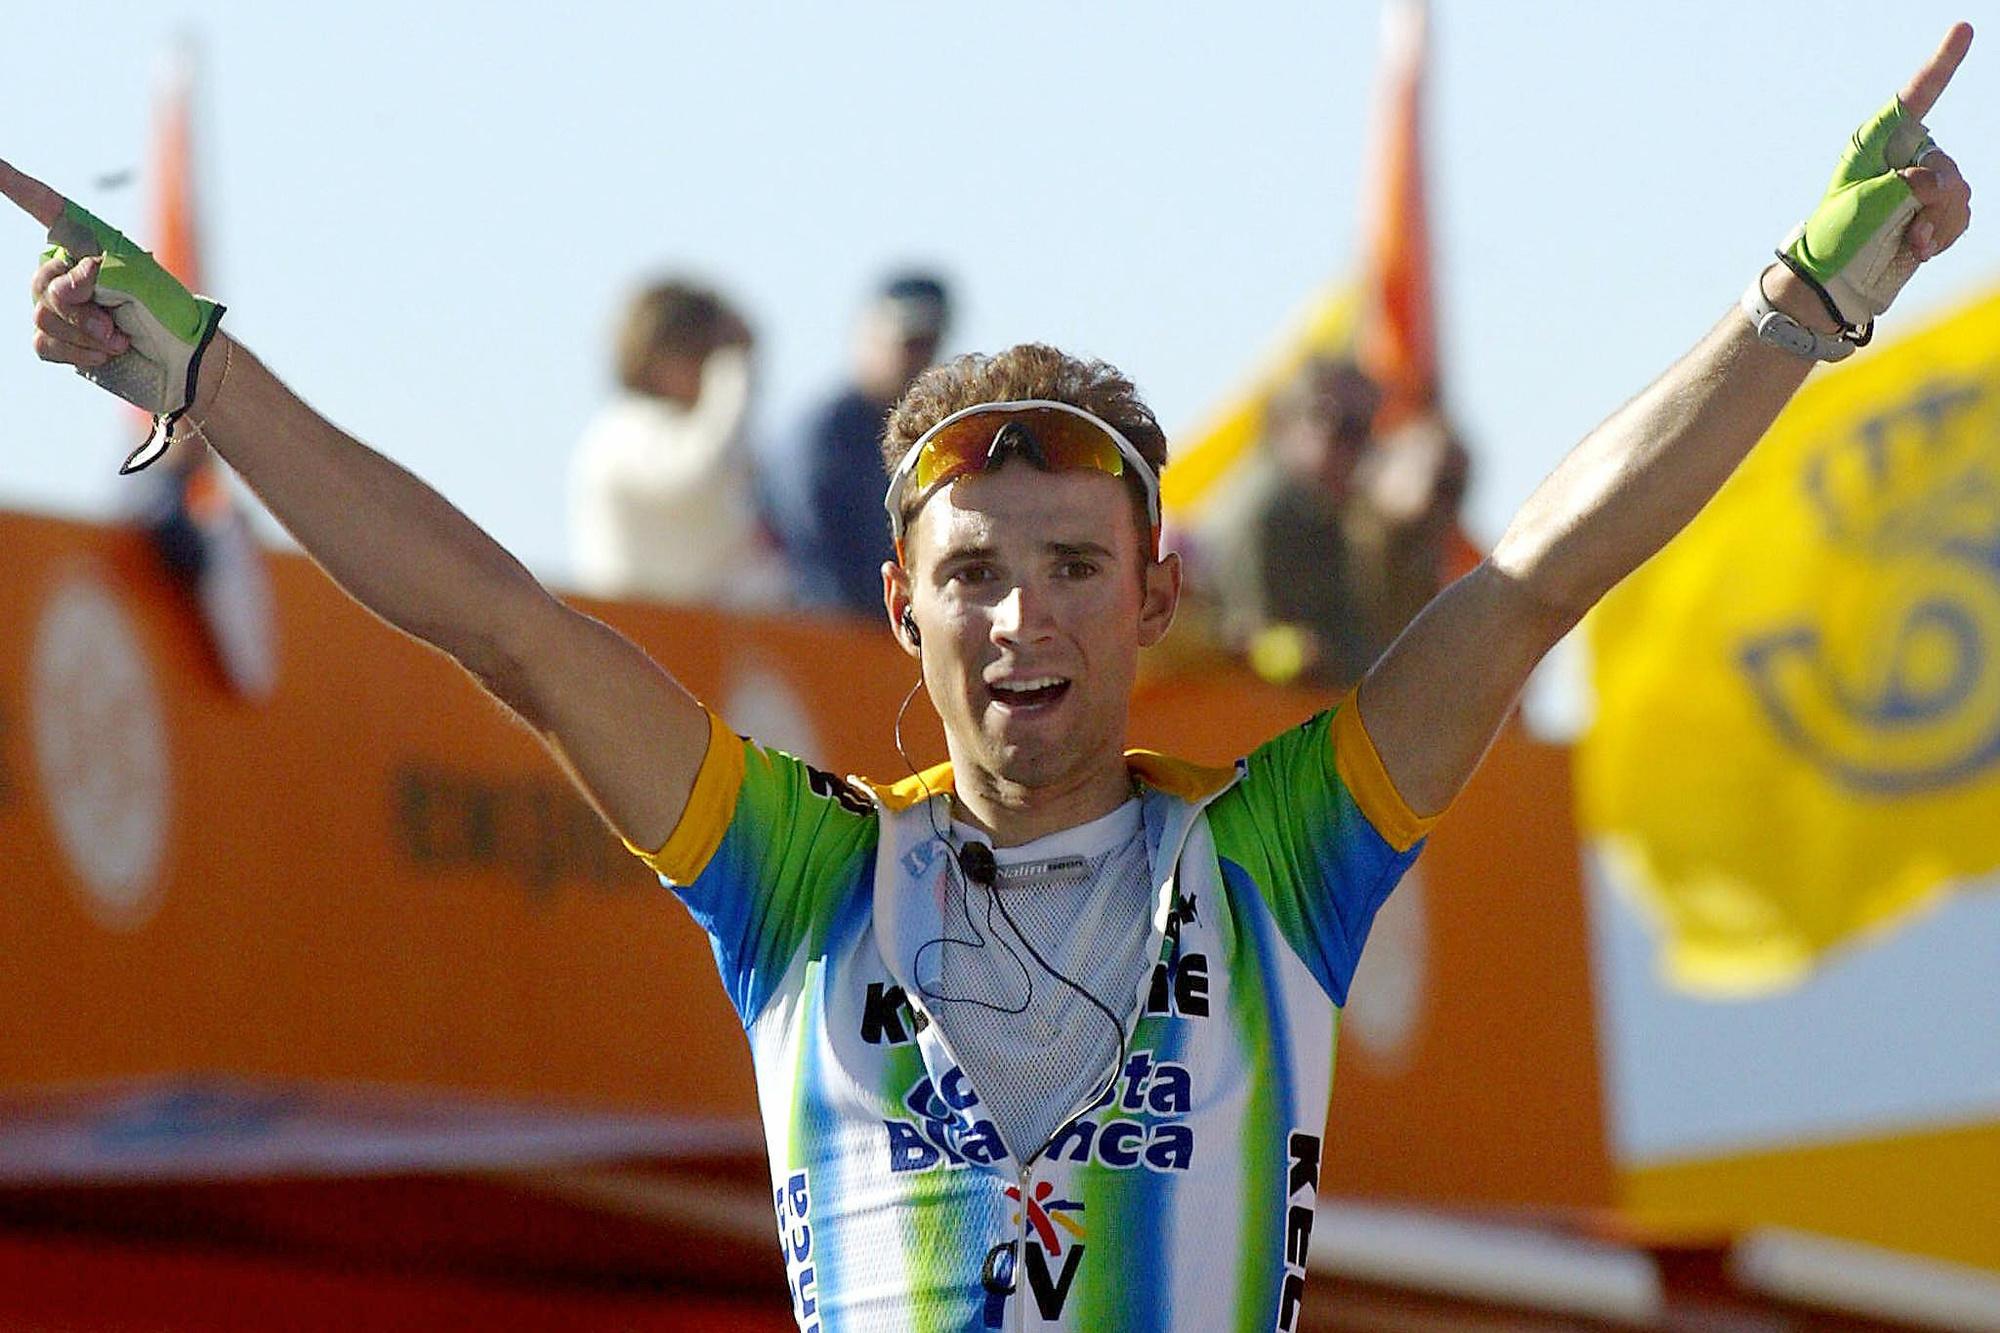 Alejandro Valverde viert zijn eerste ritzege in de Vuelta, in de editie van 2003, waarin hij ook derde in het eindklassement zal eindigen.